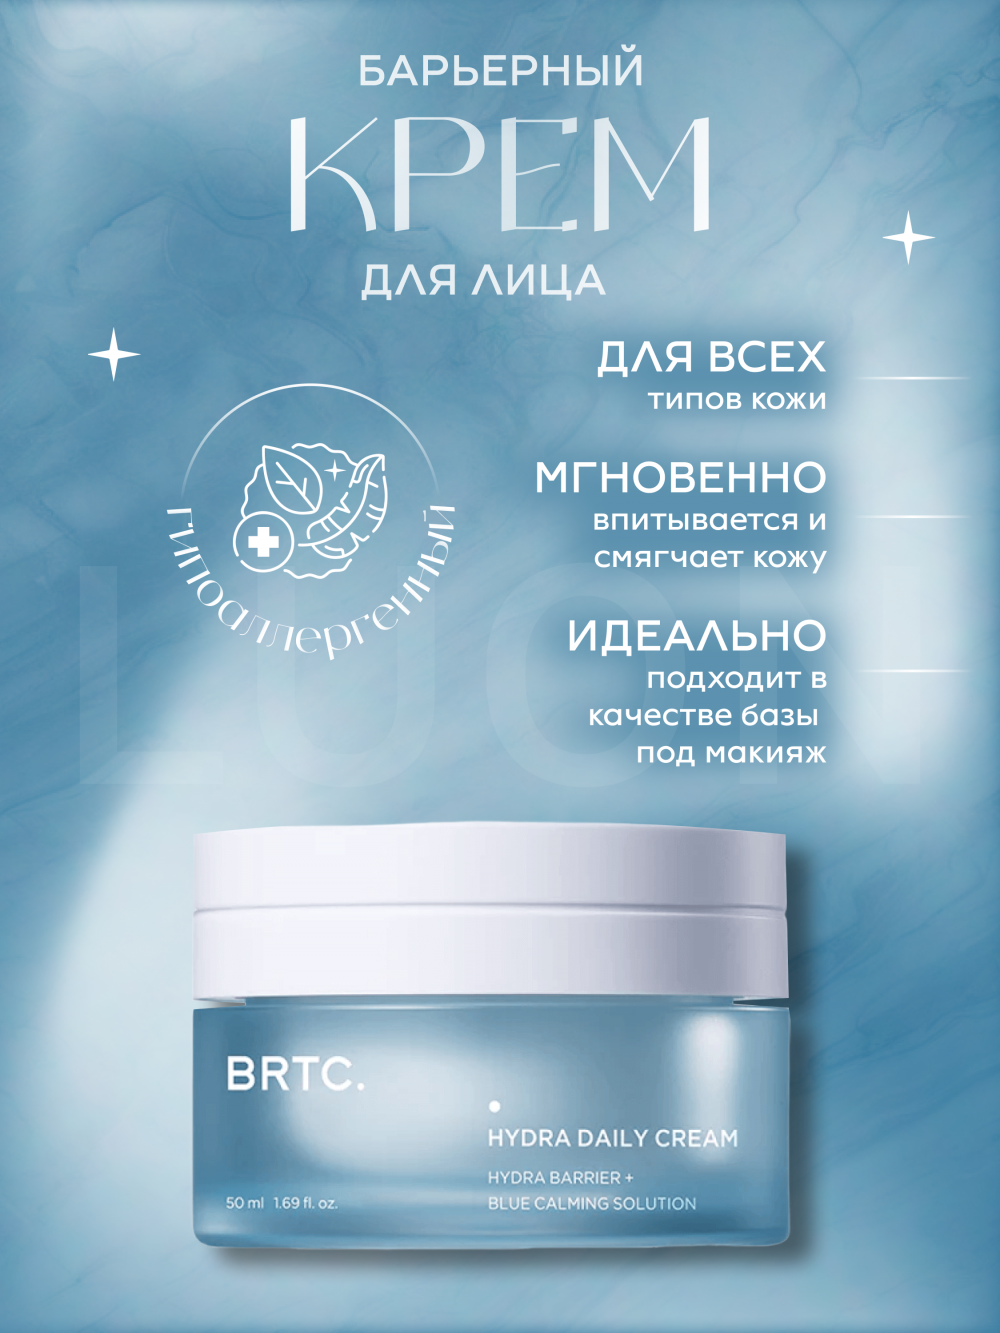 Барьерный крем для глубокого увлажнения BRTC Hydra Daily Cream (50ml)